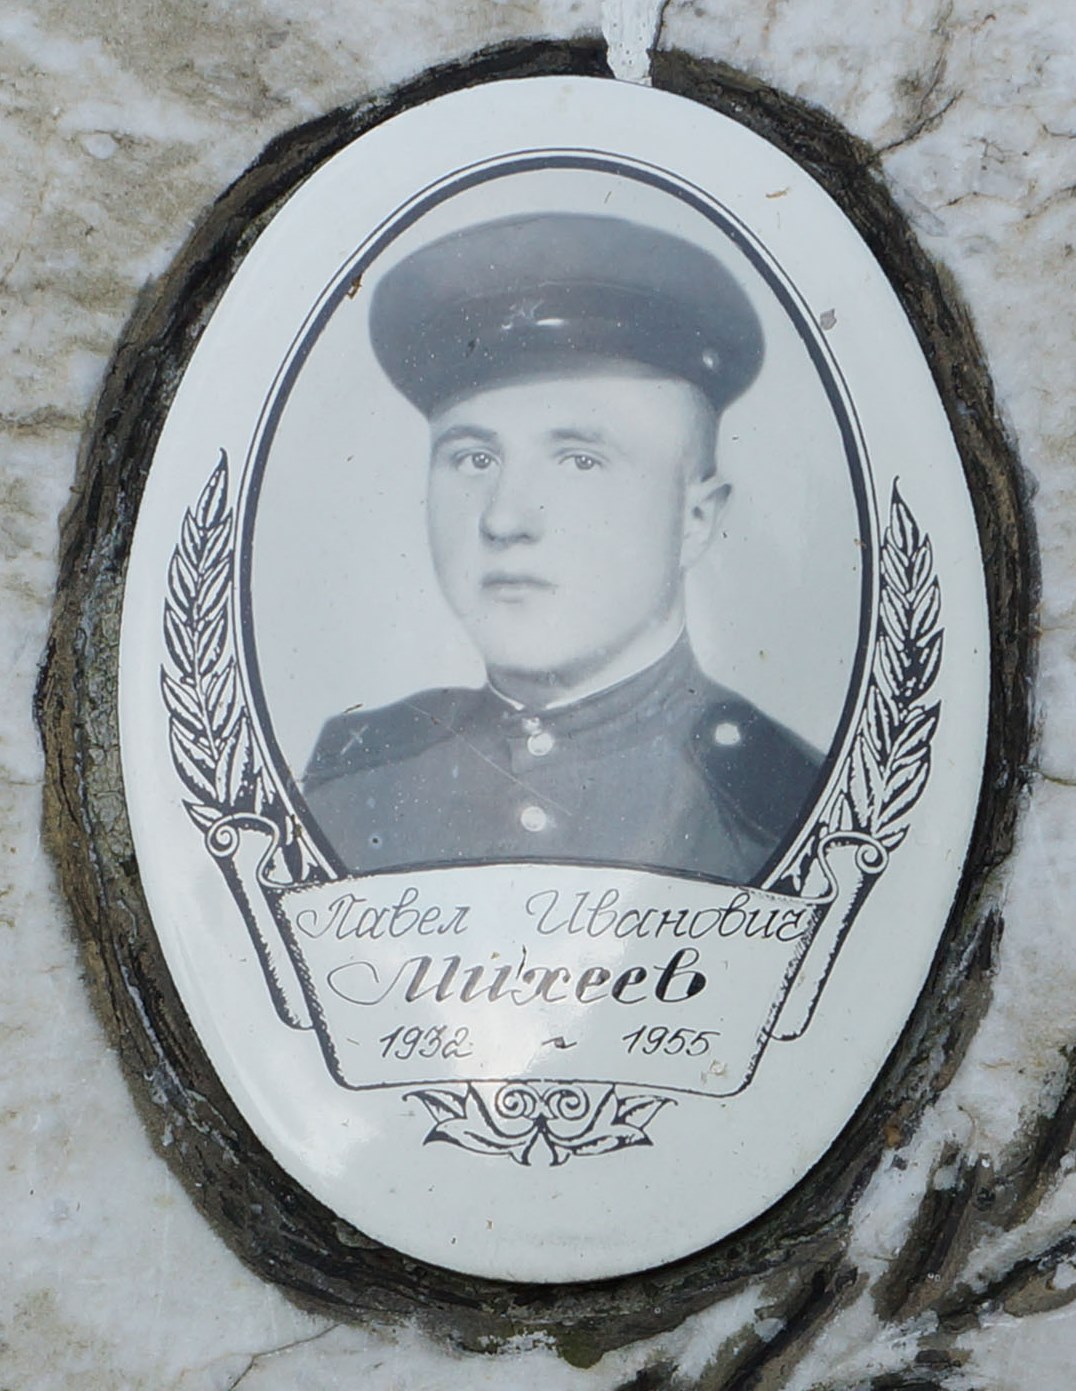 Михеев Павел Иванович, 1932-1955.